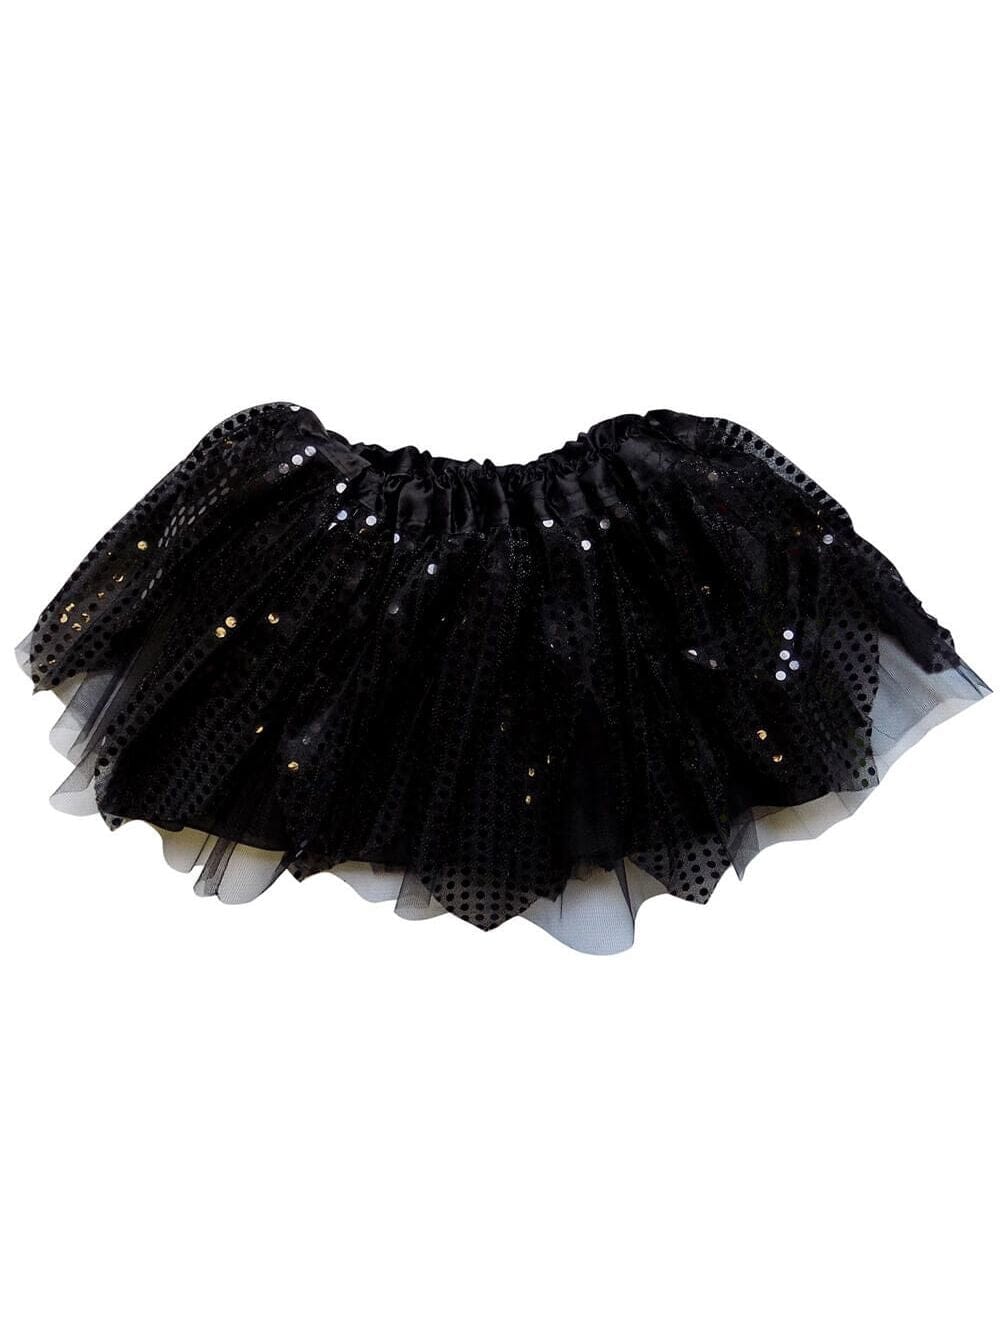 Black Sparkle Running Tutu Skirt Costume for Girls, Women, Plus - Sydney So Sweet